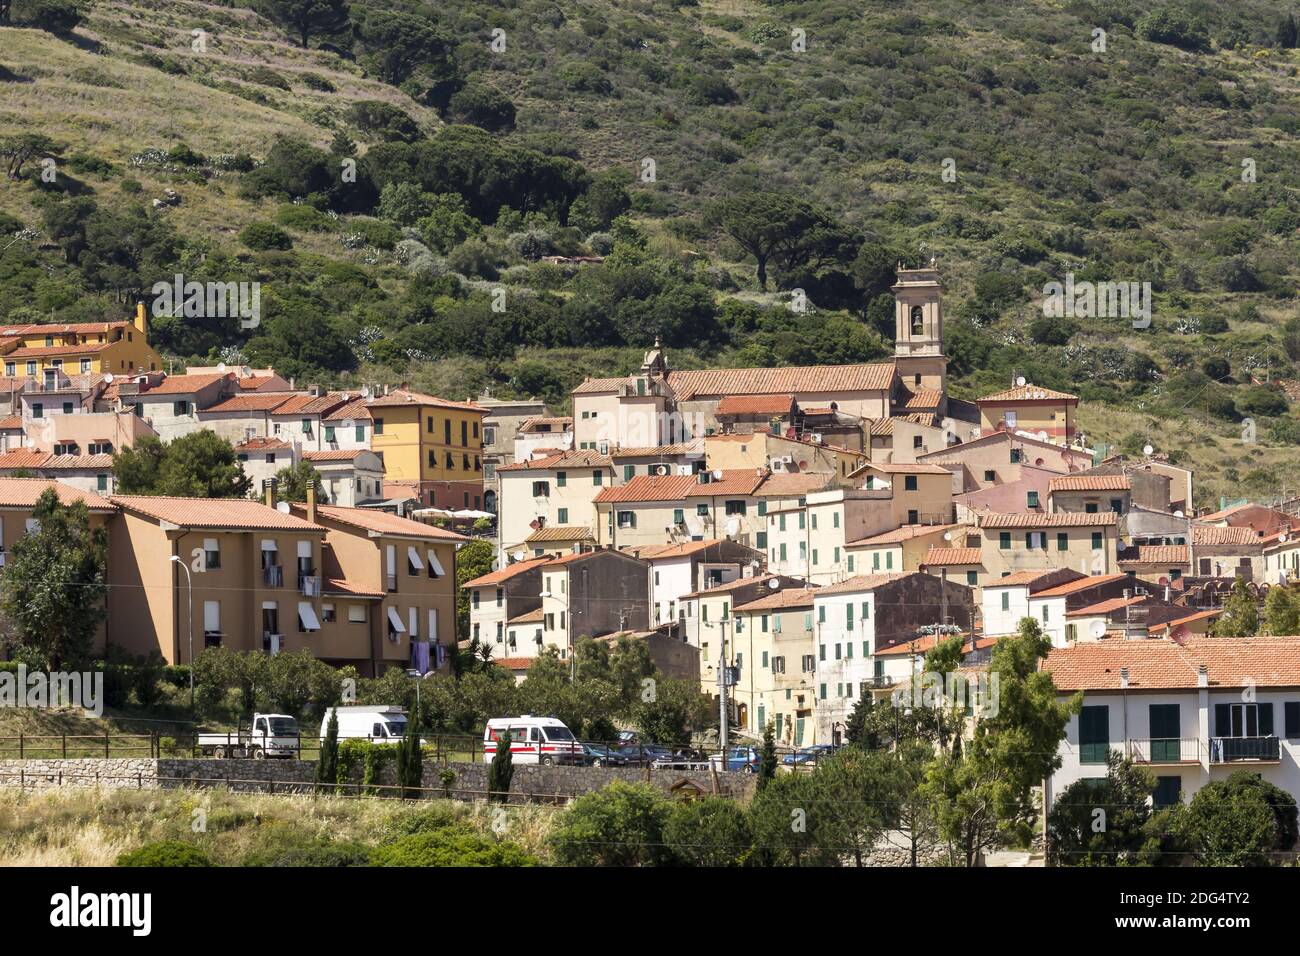 Rio nell'Elba, village at a hill, Elba, Tuscany Stock Photo